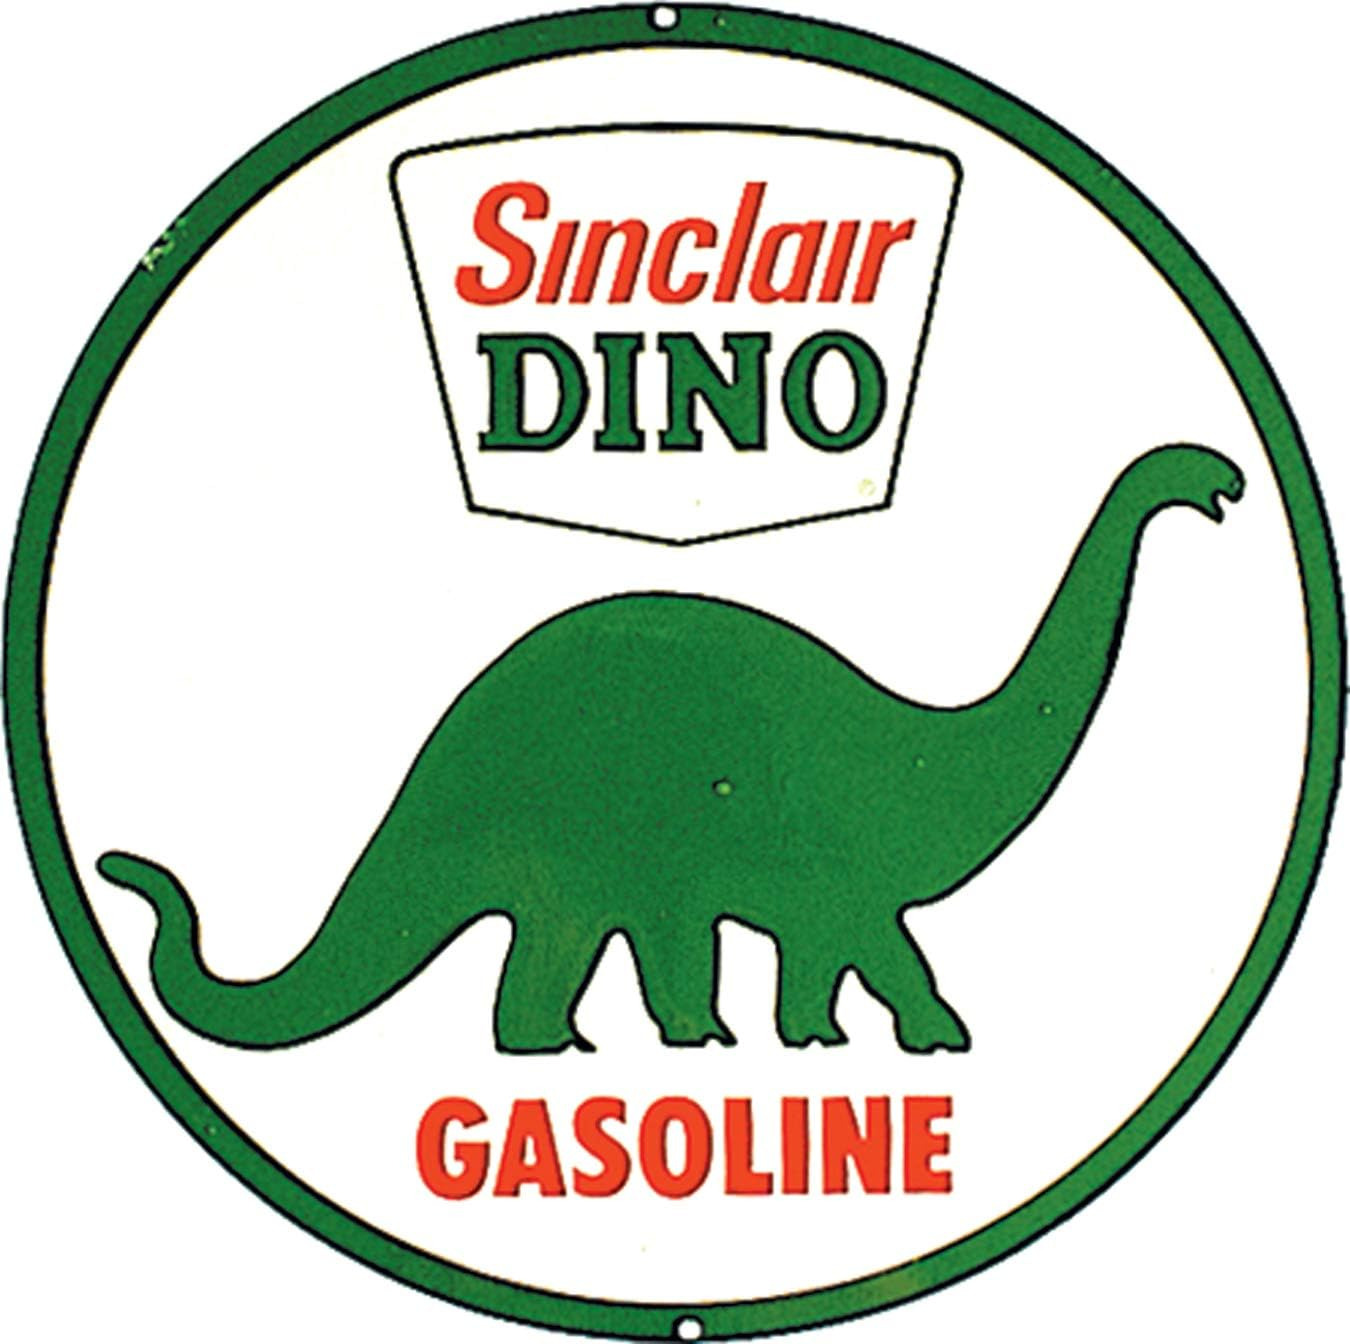 Sinclair Dino Gasoline Aluminum Sign with Embossed Edge - Nostalgic Vintage Meta